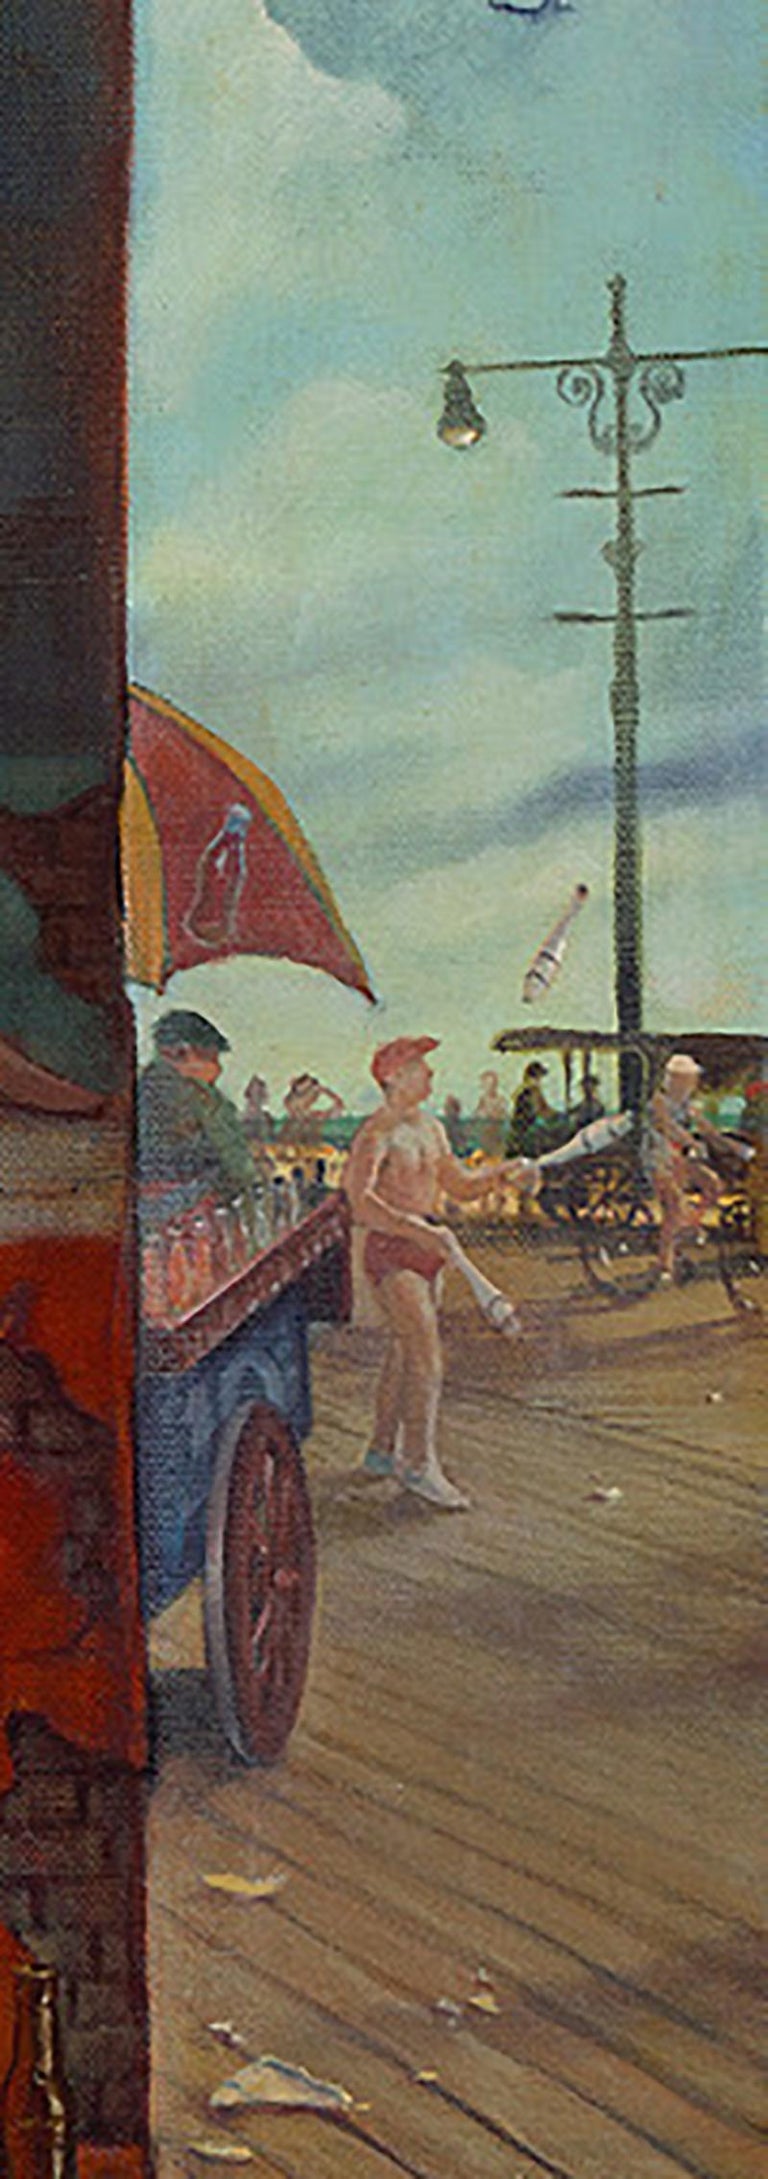 Boardwalk Beauty, Danny Galieote, Oil on Canvas, Pop Art, Americana-Figurative For Sale 2